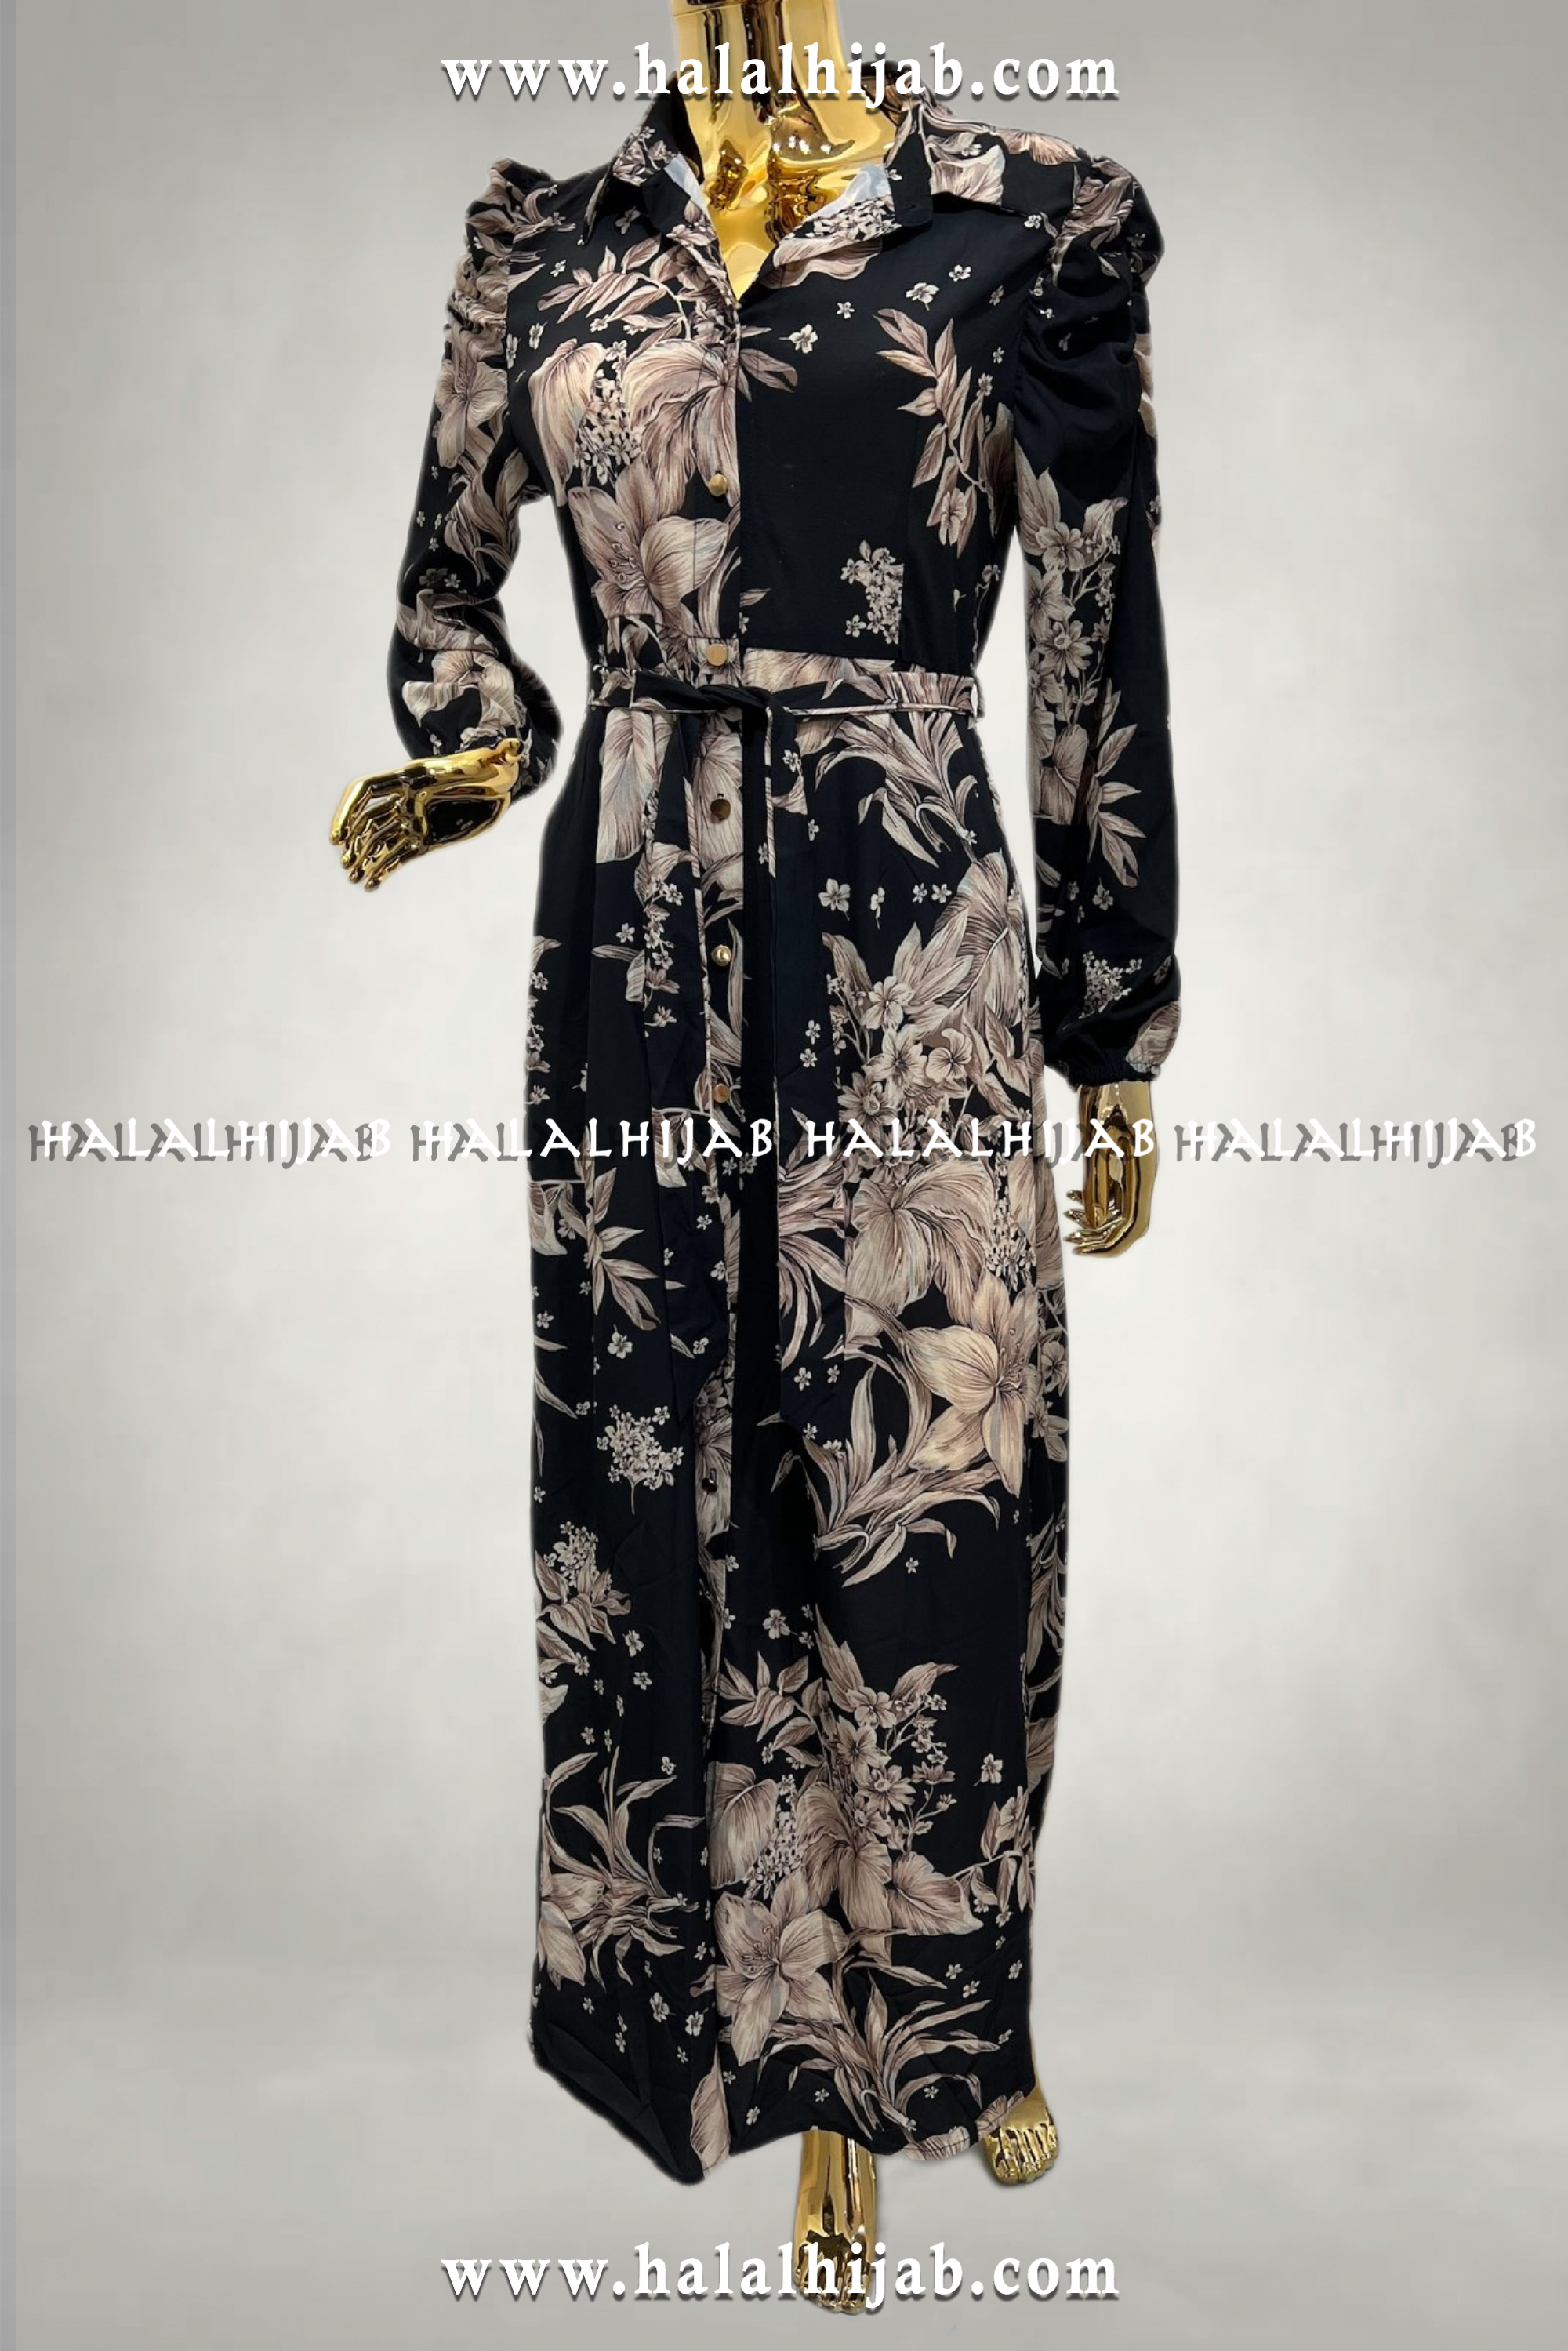 Floral Print Neutral Colour and Black Modest Long Dress